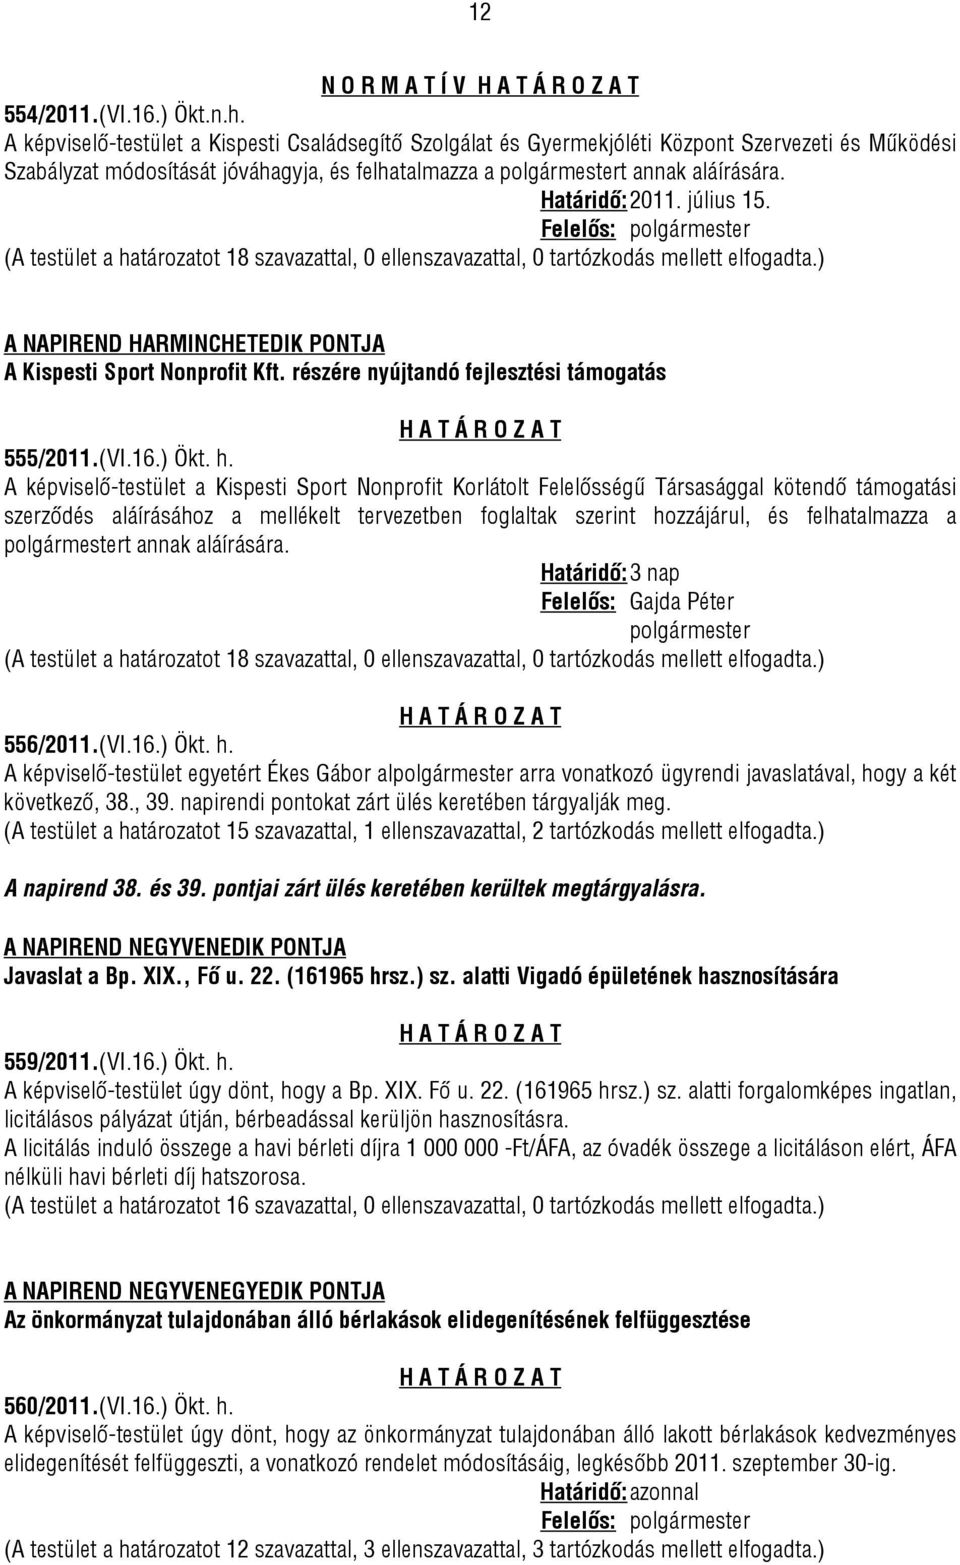 Határidő: 2011. július 15. A NAPIREND HARMINCHETEDIK PONTJA A Kispesti Sport Nonprofit Kft. részére nyújtandó fejlesztési támogatás 555/2011.(VI.16.) Ökt. h.